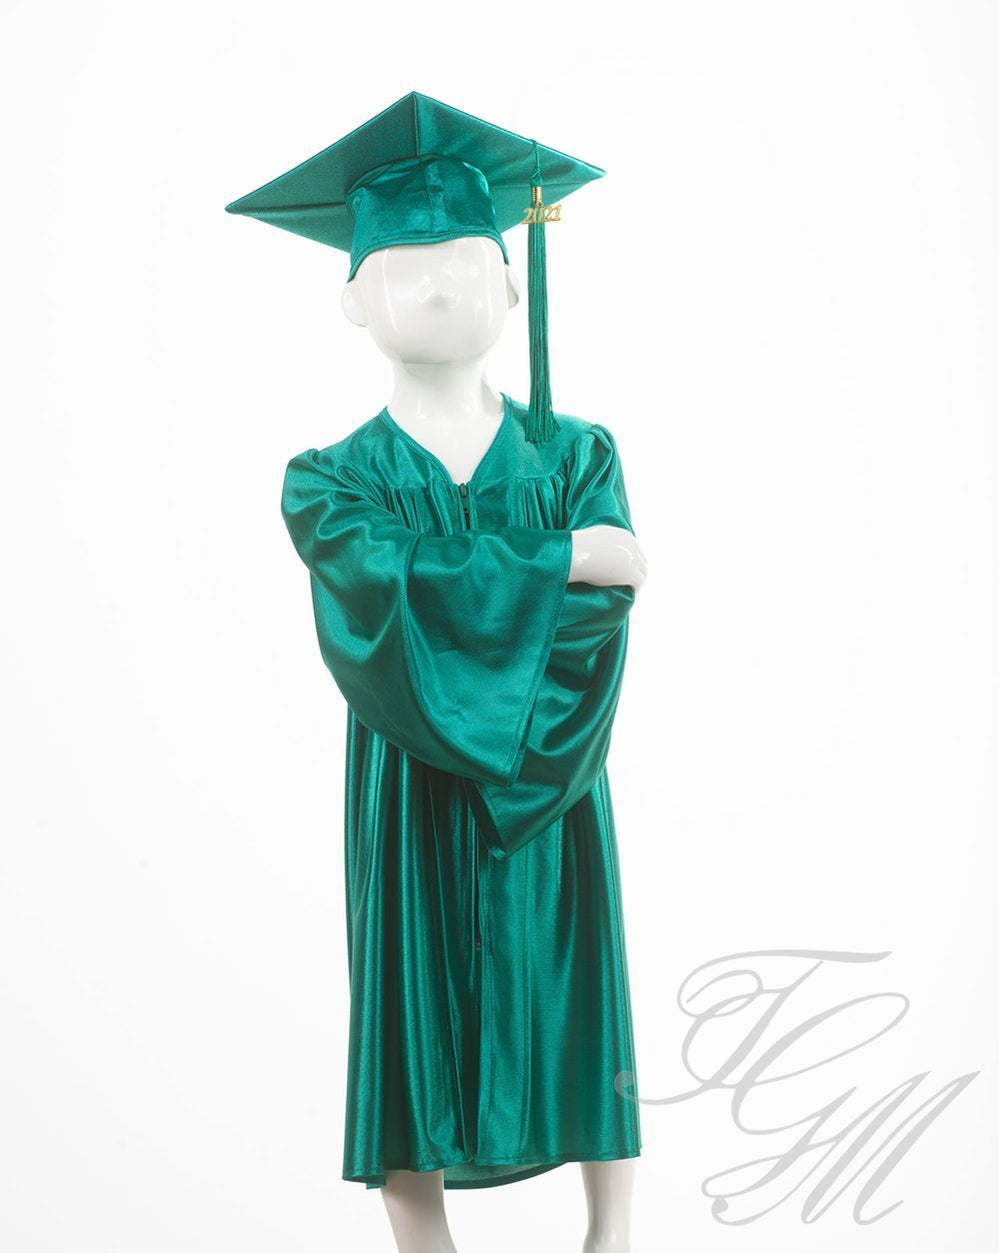 Ensemble souvenir de graduation pour enfant vert émeraude - Toge de finissant de garderie